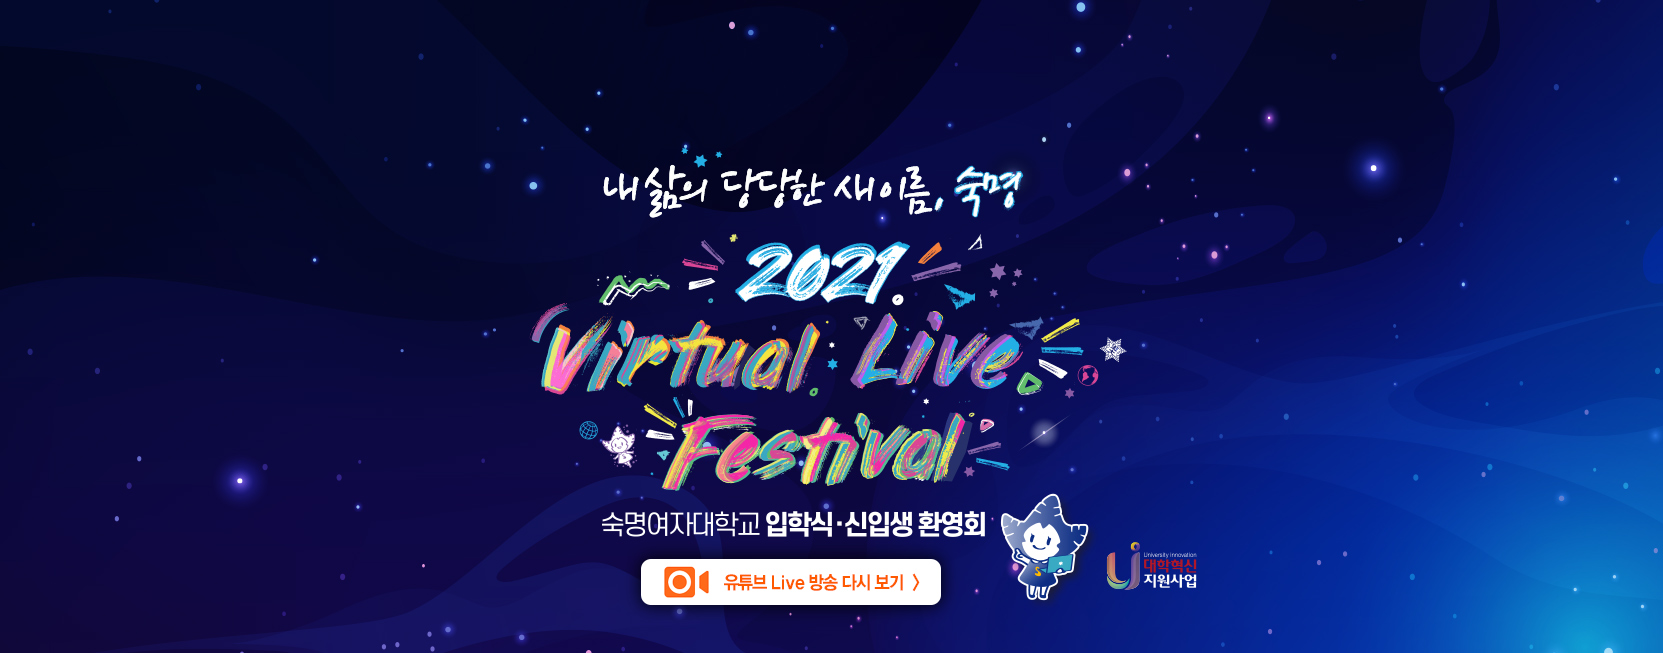 내 삶의 당당한 새 이름, 숙명
2021 숙명여자대학교 입학식 및 신입생 환영회 Virtual Live festival
2021. 2. 23. Tue. 14시
유튜브 Live 방송 다시 보기